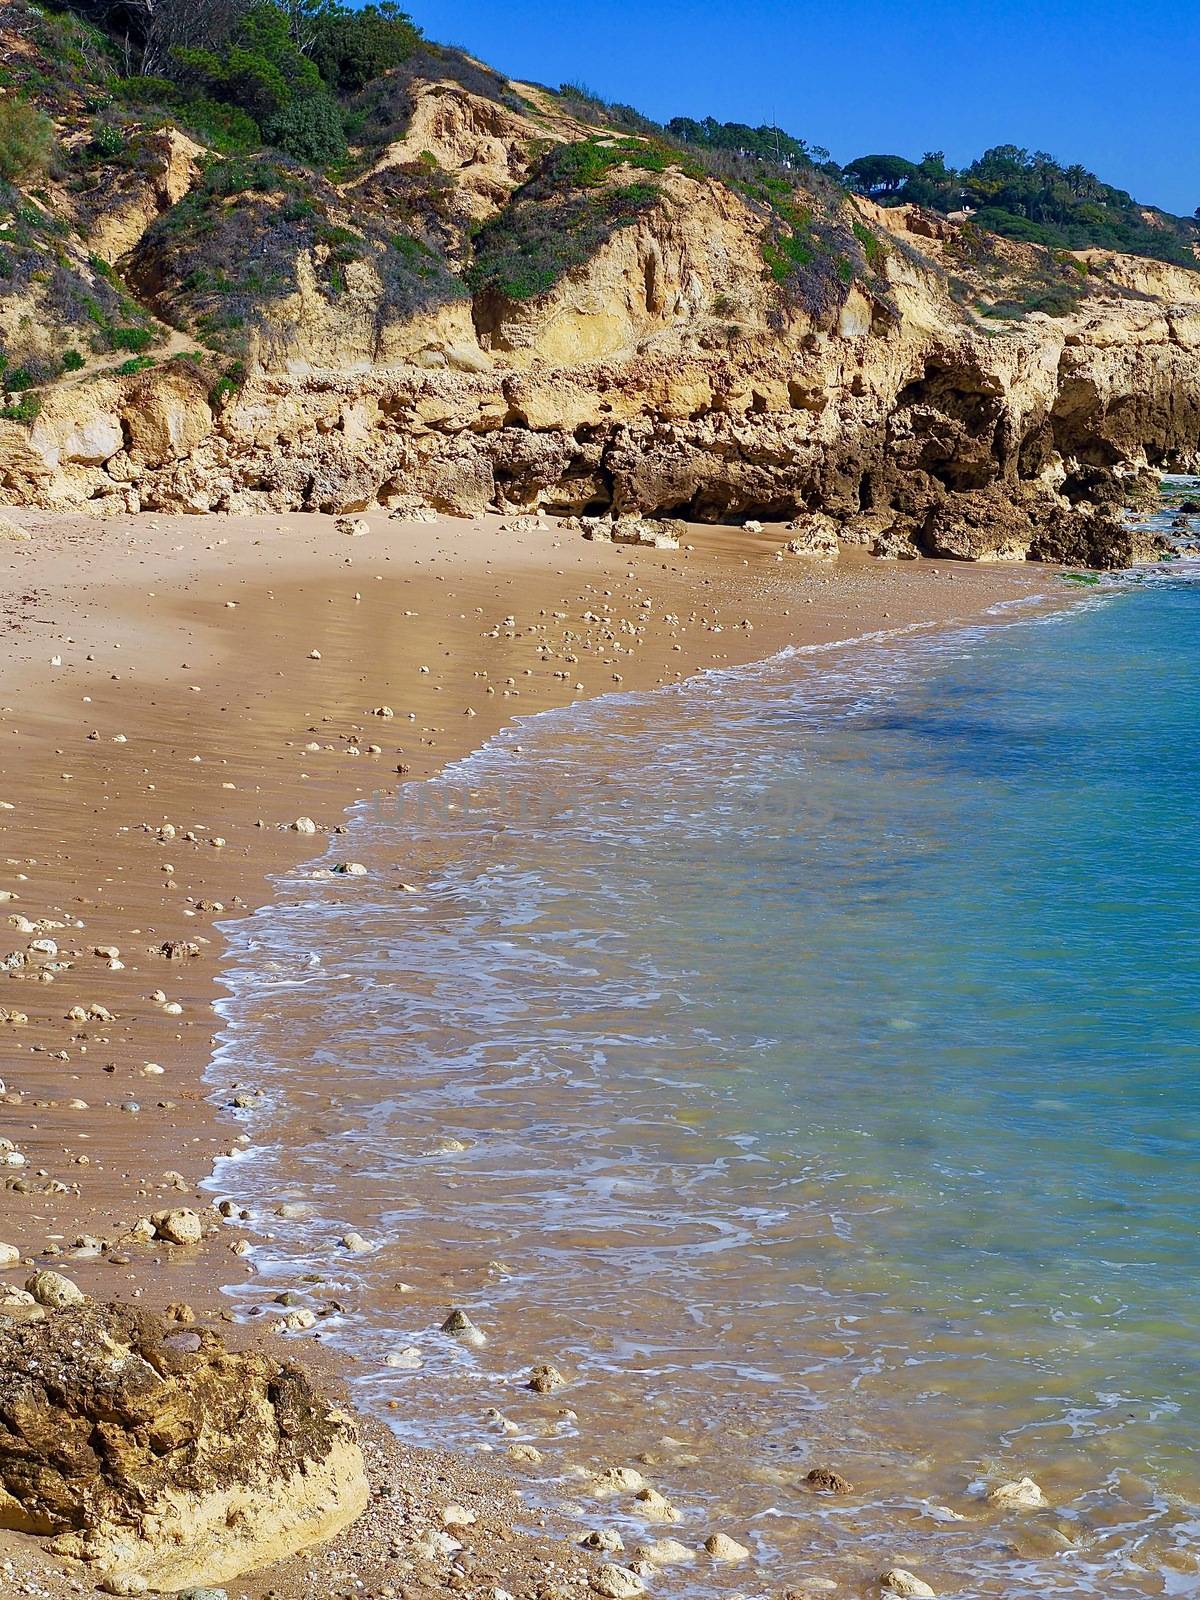 Beautiful seascape at Praia da Oura in Albufeira at the Algarve coast of Portugal